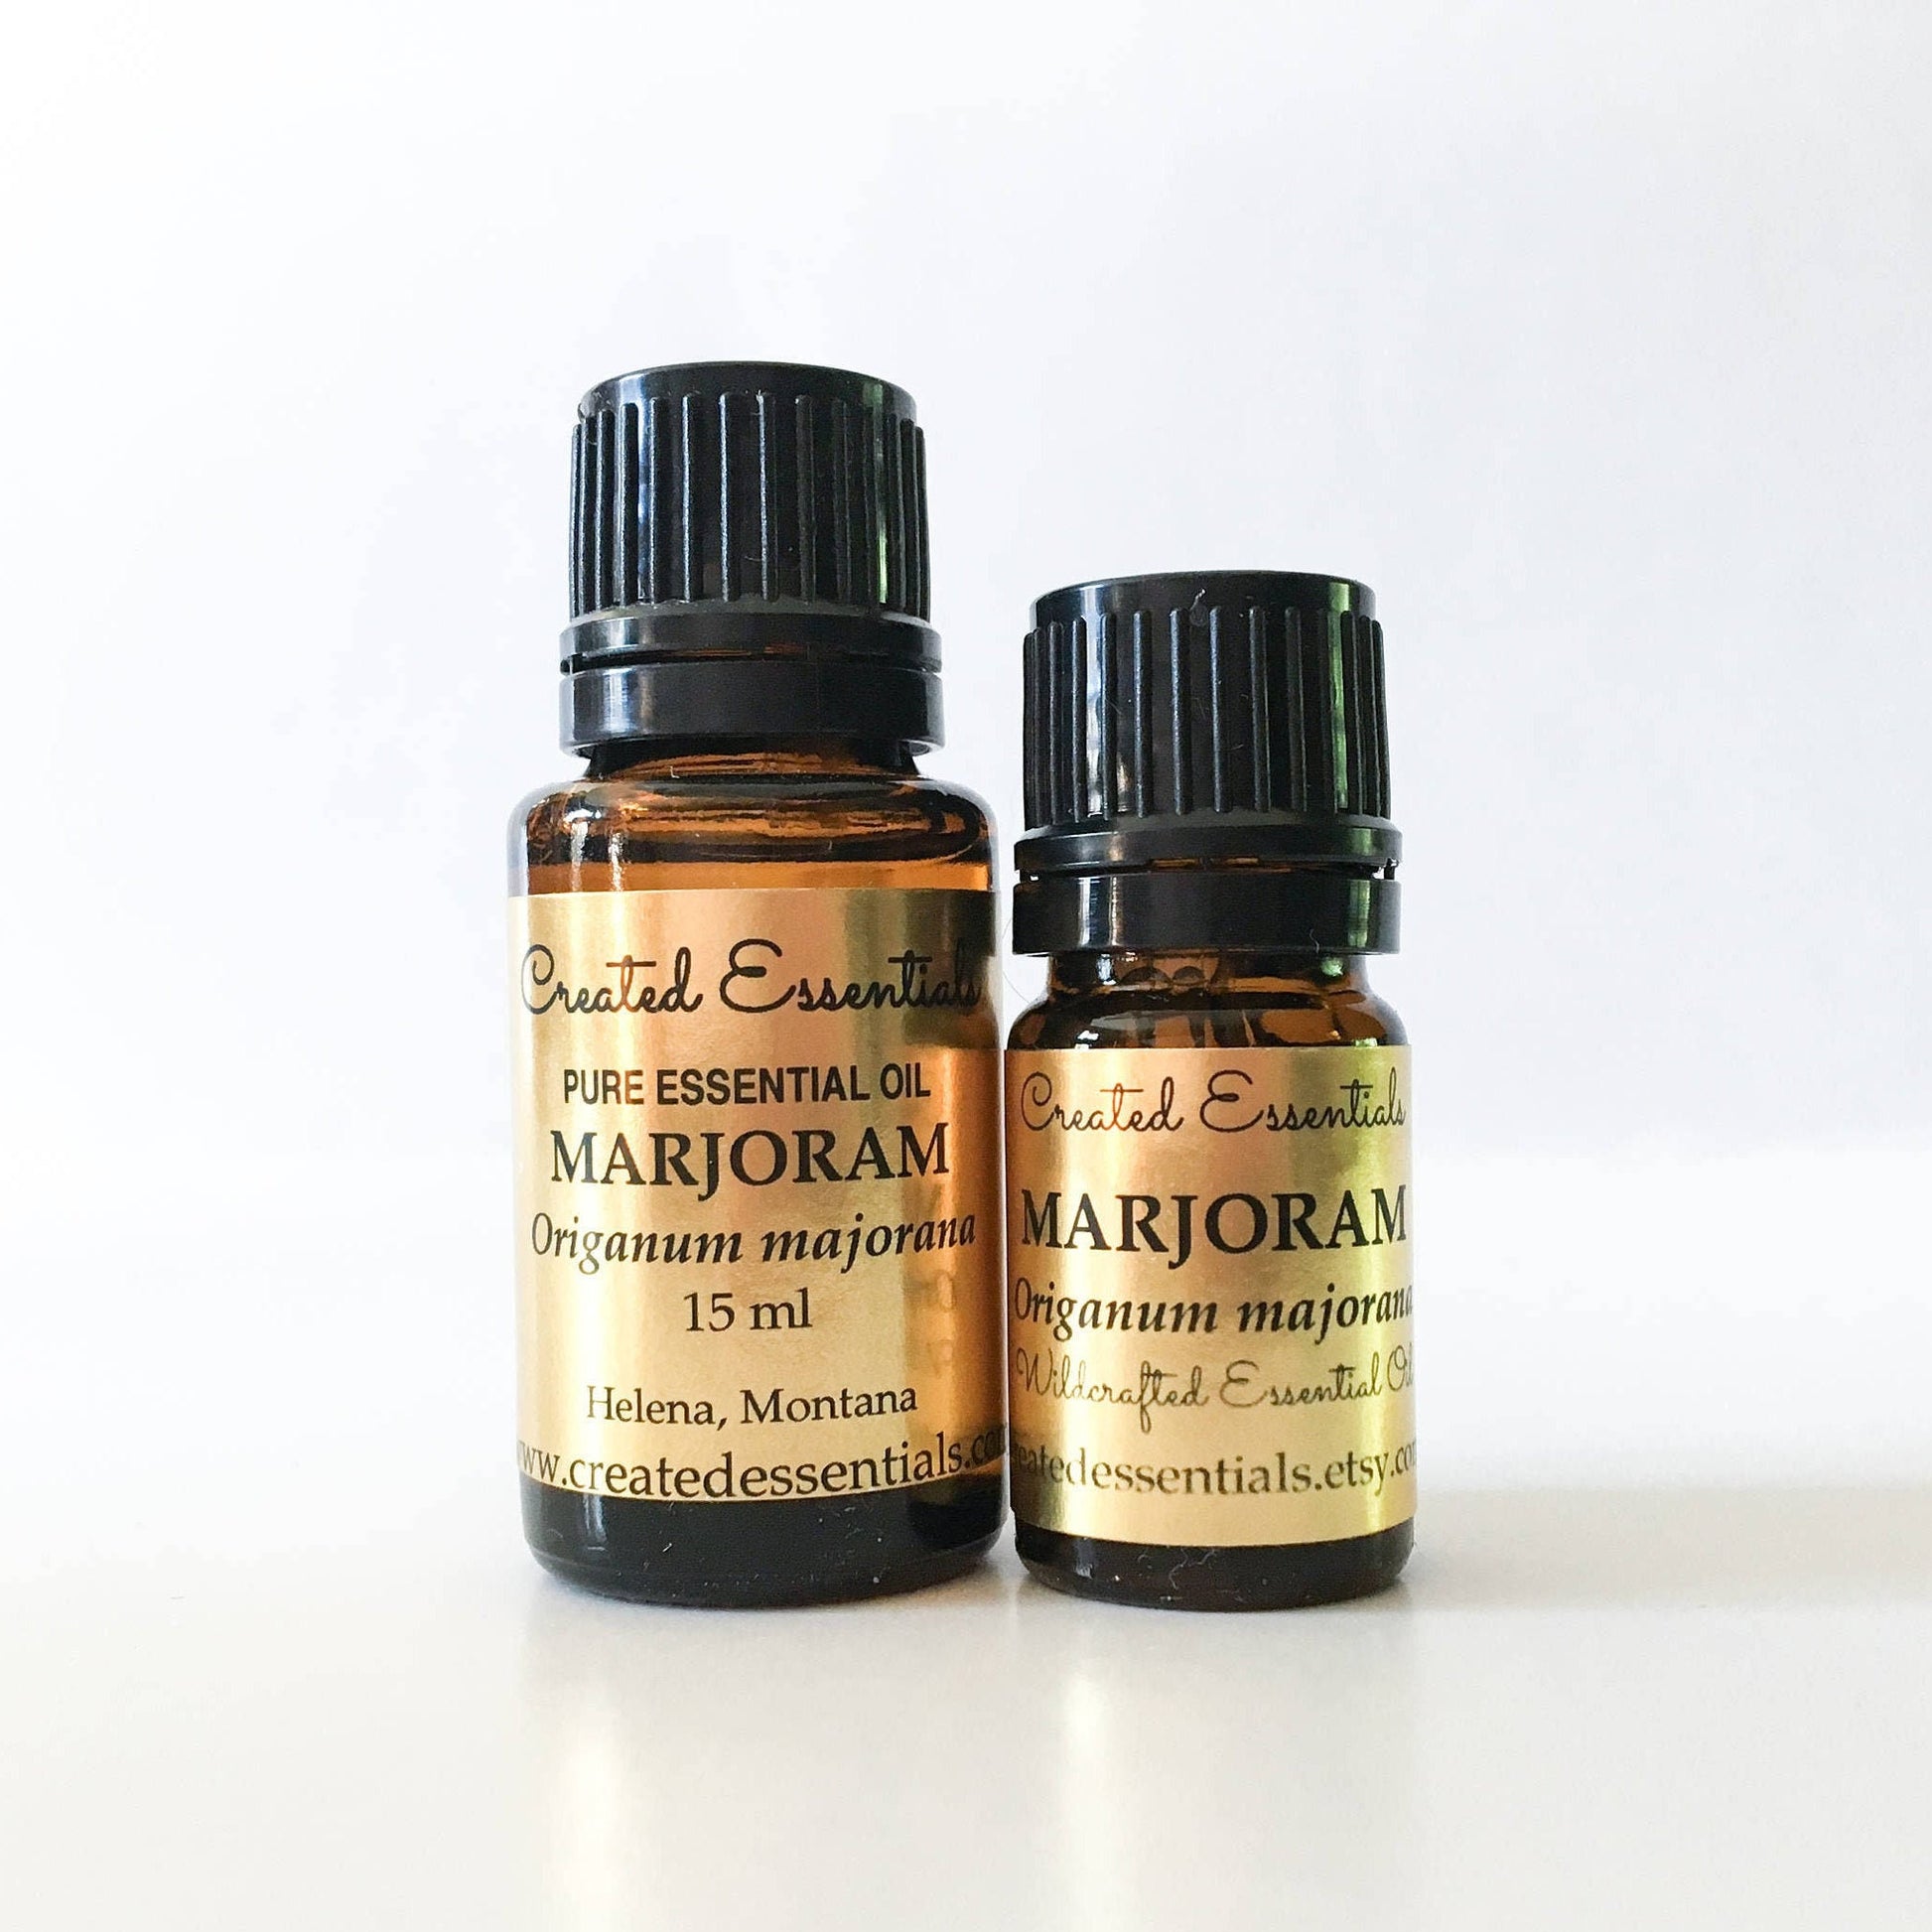 Marjoram Essential Oil | 100% Pure Essential Oil of Marjoram | Therapeutic Essential Oil of Marjoram | Aromatherapy